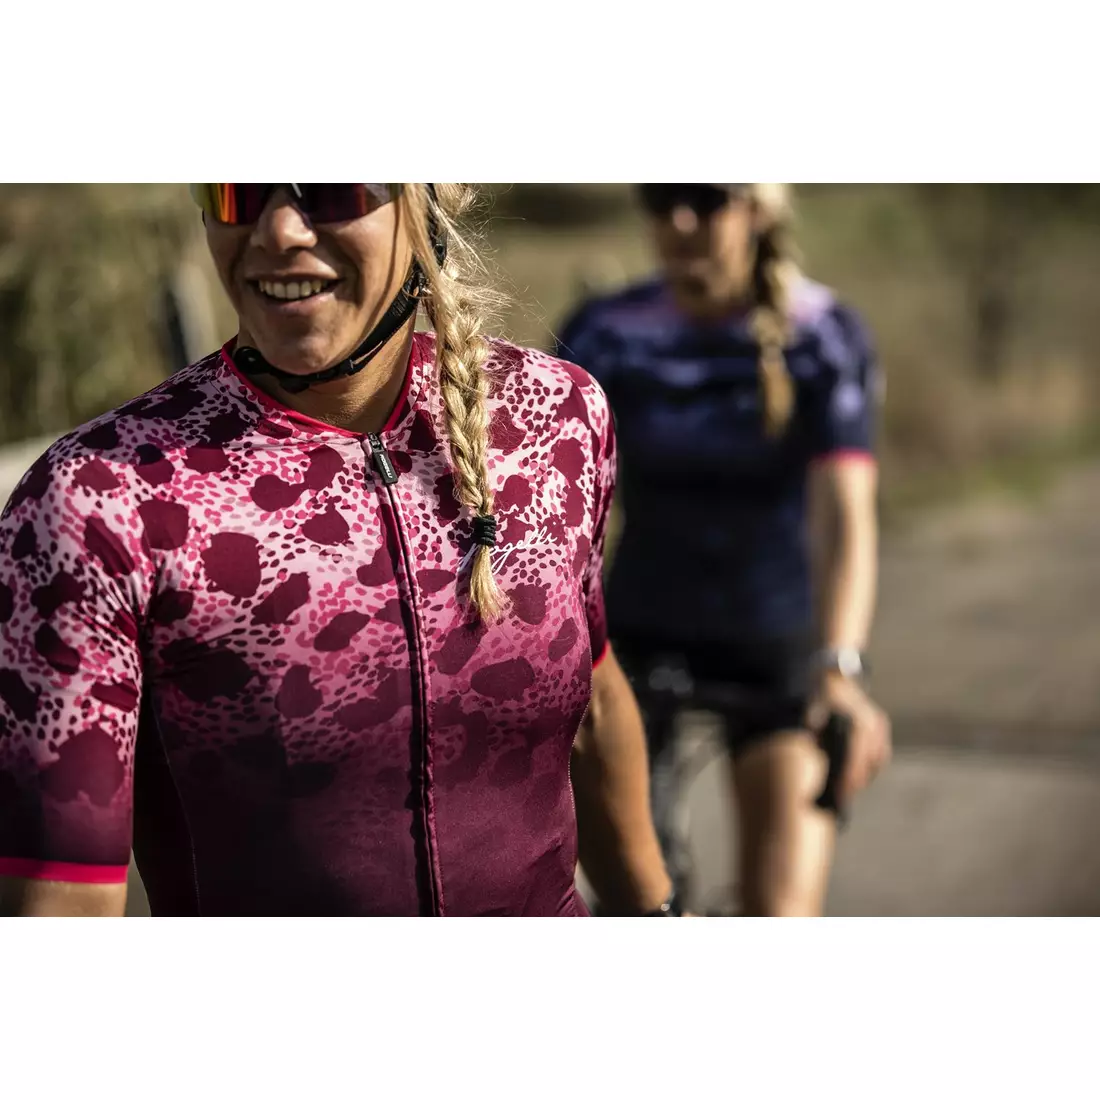 ROGELLI Tricou de ciclism pentru femei ANIMAL maro